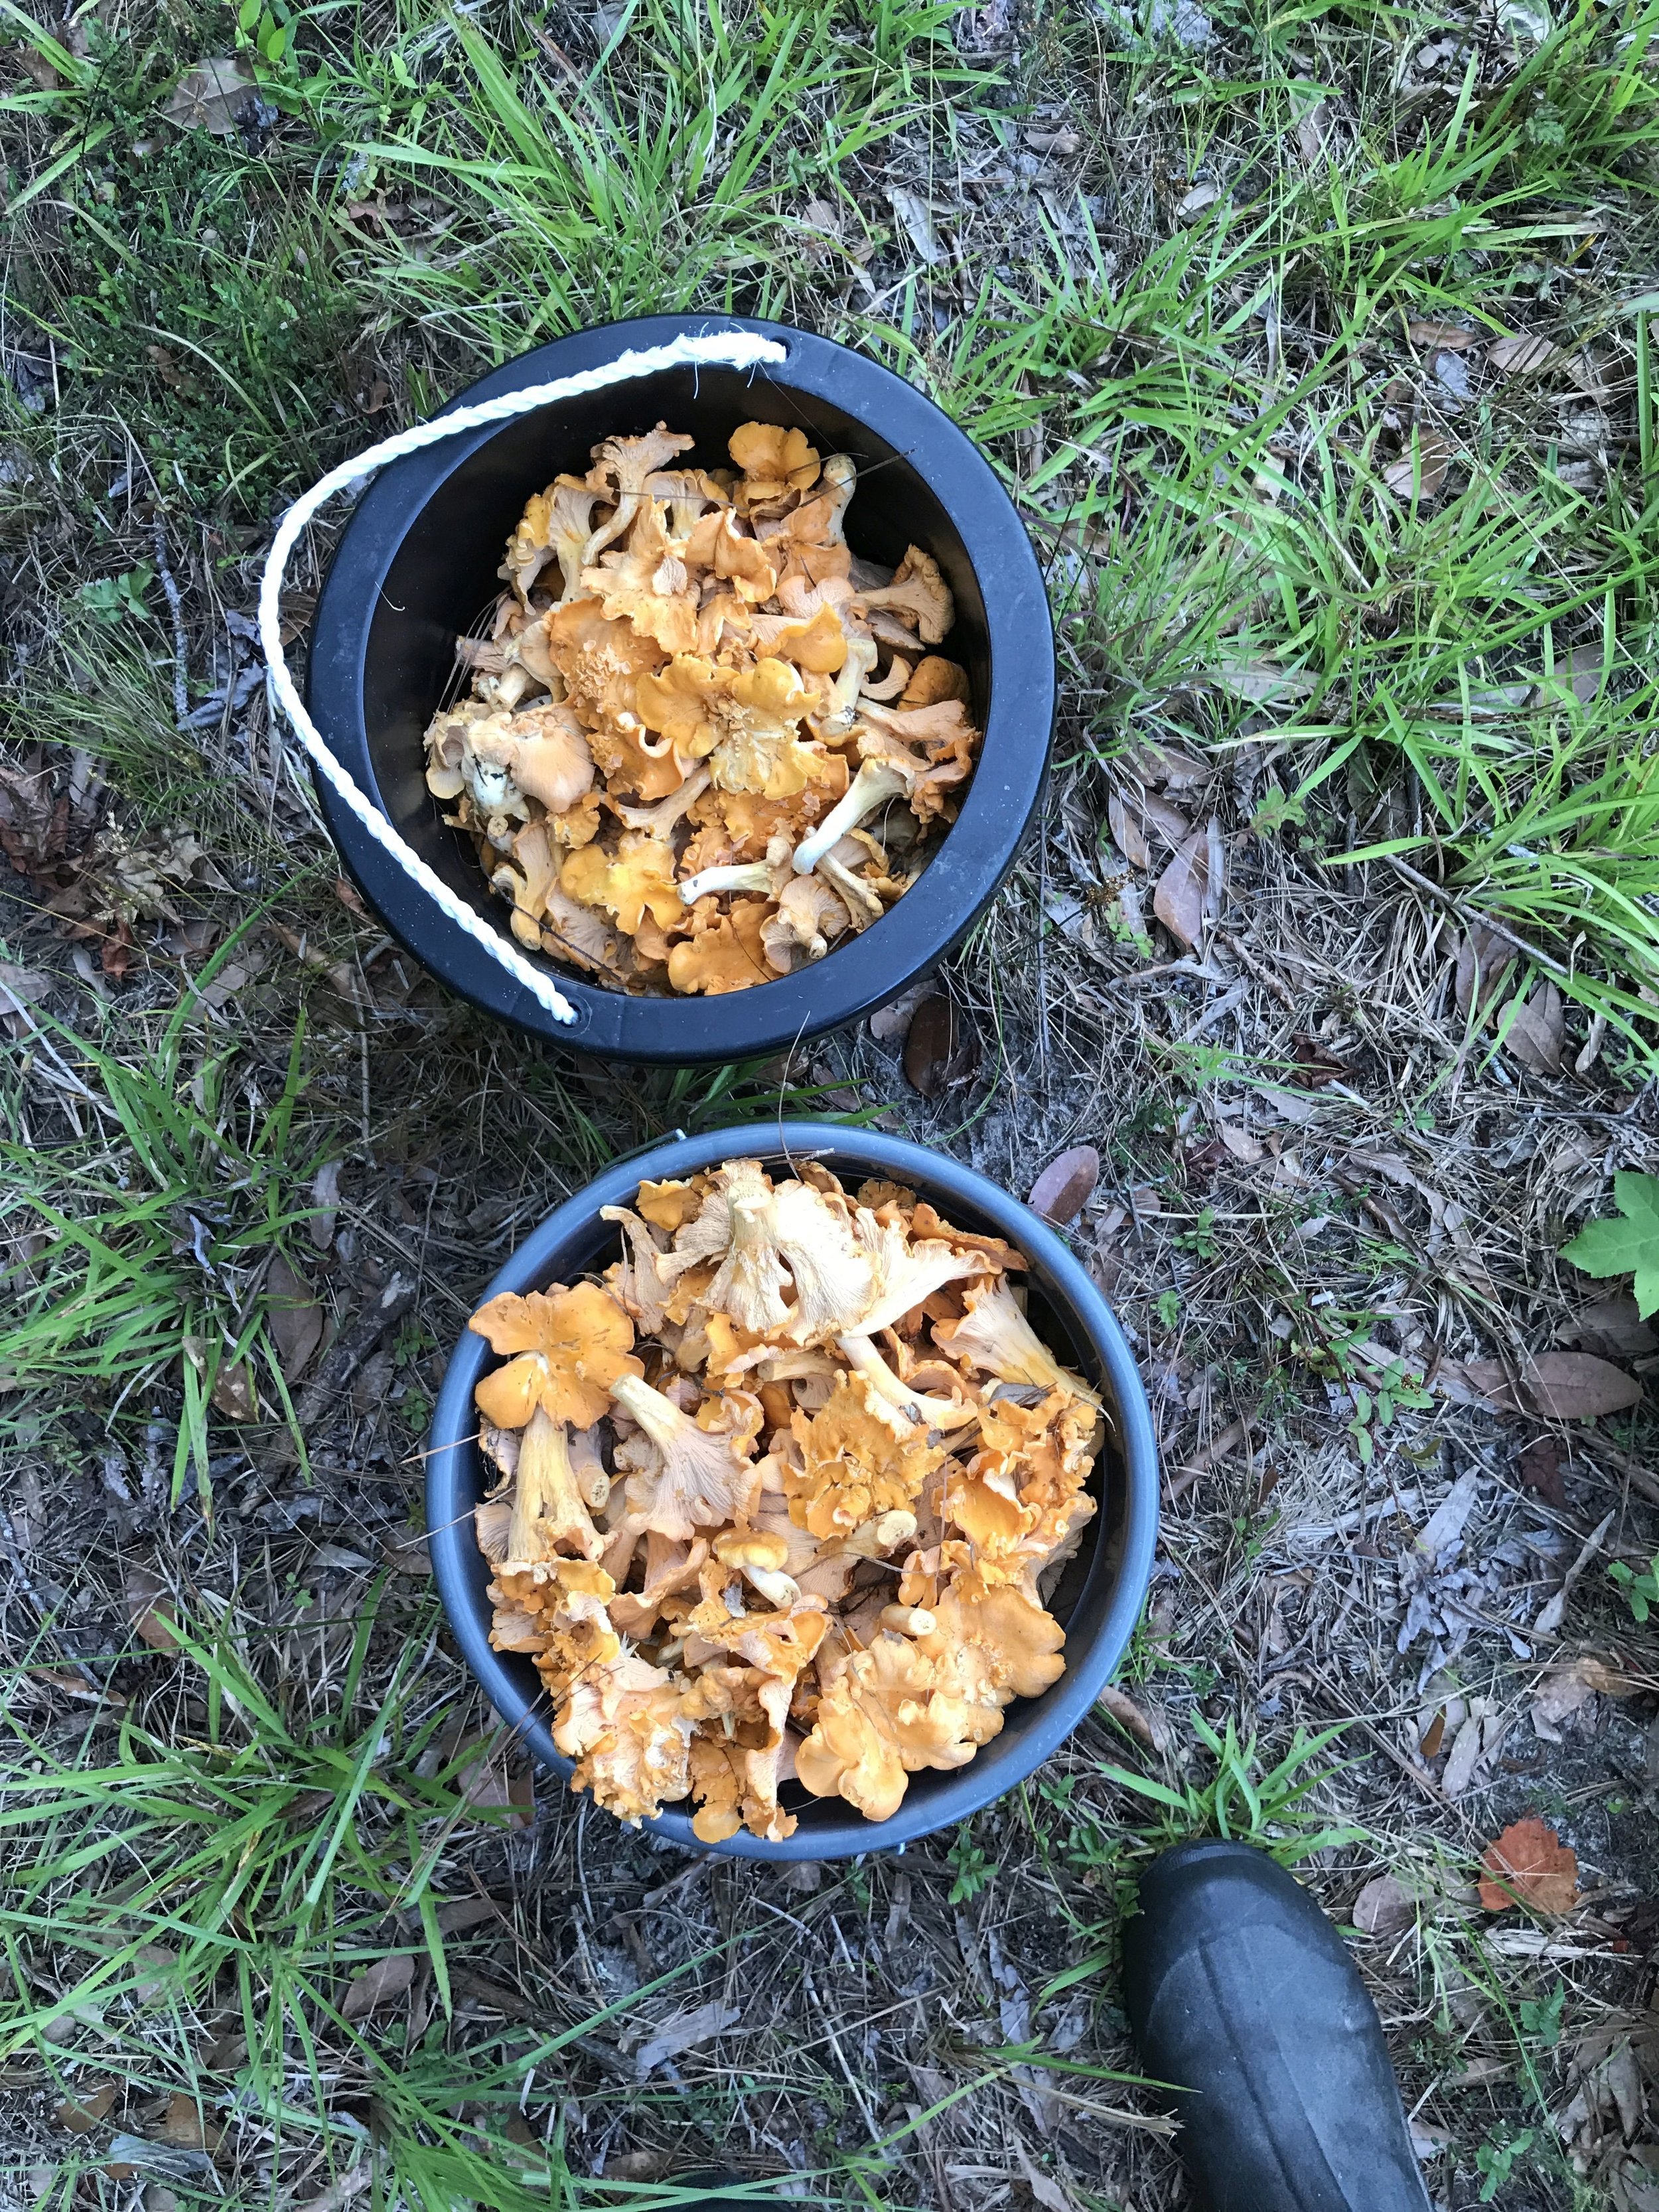 Mary Connor - buckets of mushrooms.jpg